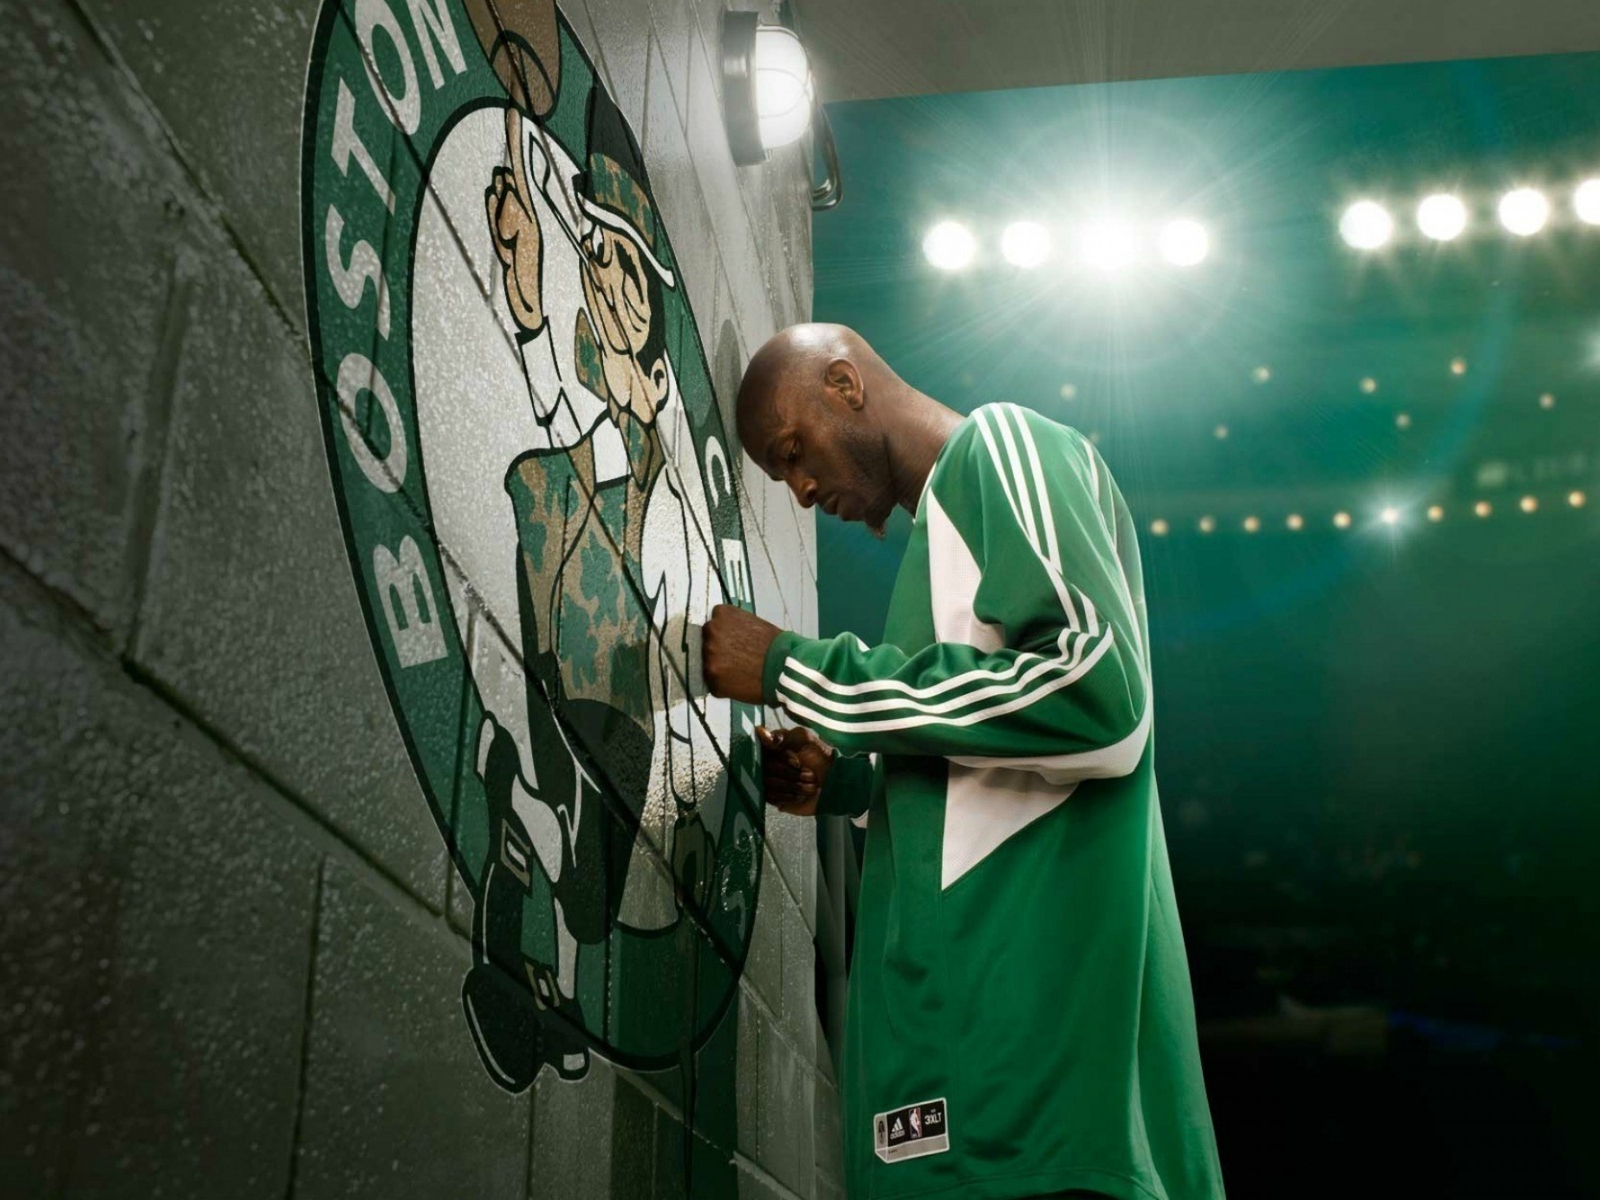 Kevin Garnett Boston Celtics for 1600 x 1200 resolution